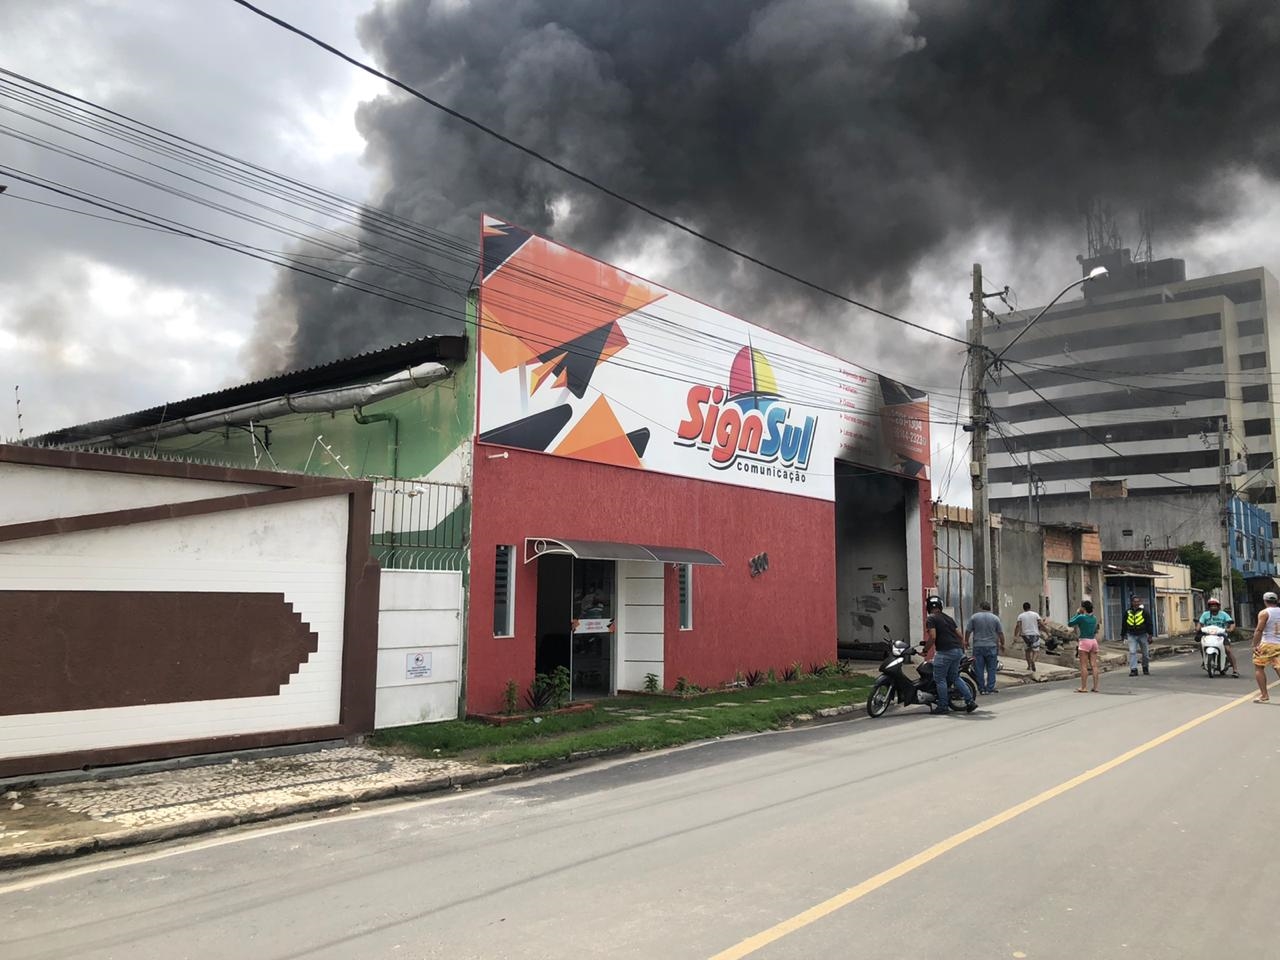 Incêndio atinge empresa Sign Sul no centro de Eunápolis. (Foto: BAHIA DIA A DIA)